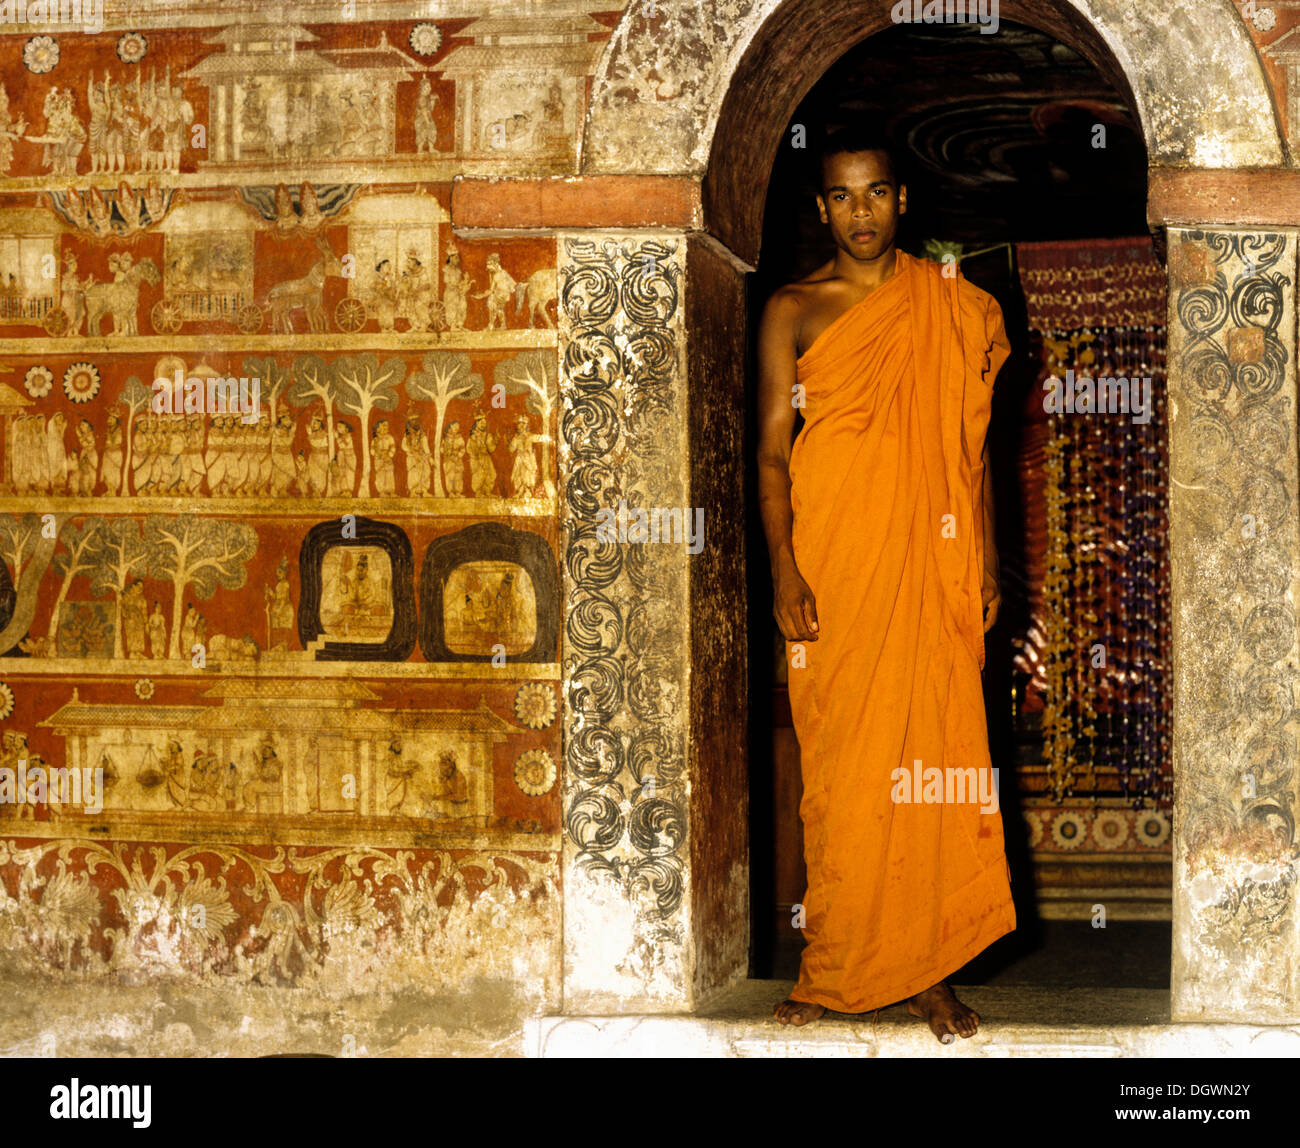 Moine debout à l'entrée du lieu de culte, Archway, peinture murale, Degaldoruwa Cave Temple, Kandy, Sri Lanka, Zentralprovinz Banque D'Images